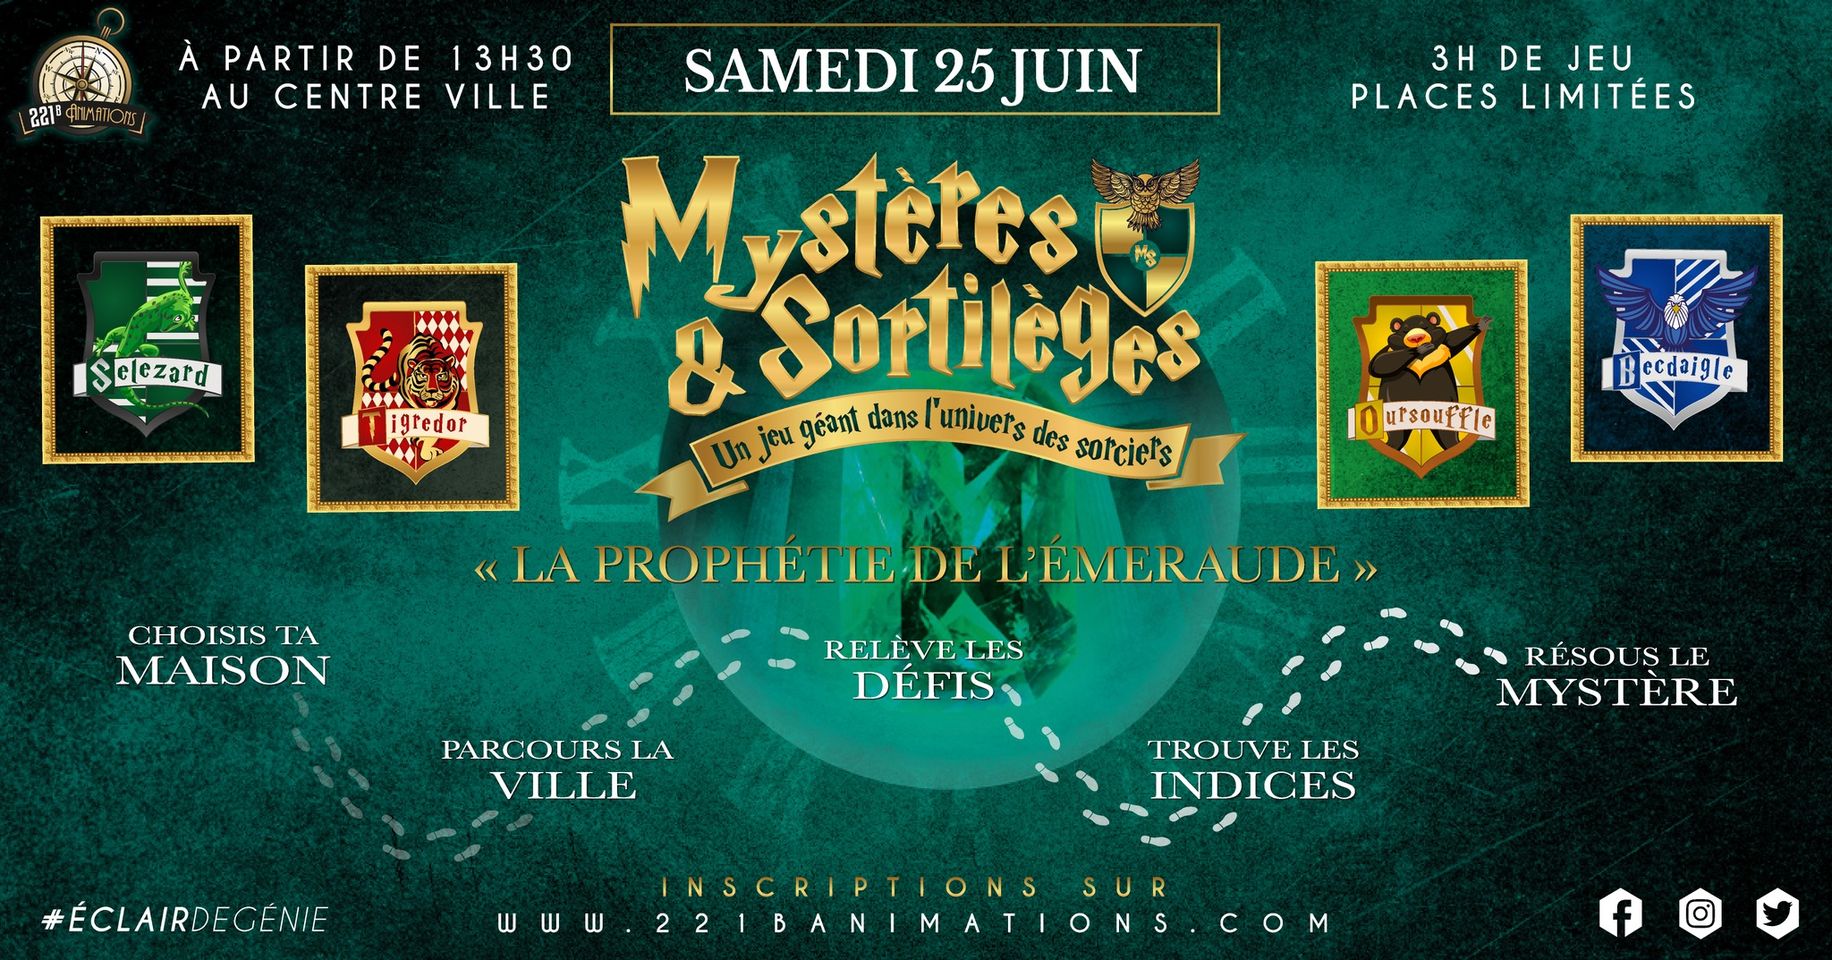 Escape Game Géant Harry Potter "Mystères & Sortilèges " à Lyon (Villeurbanne) samedi 25 juin 2022